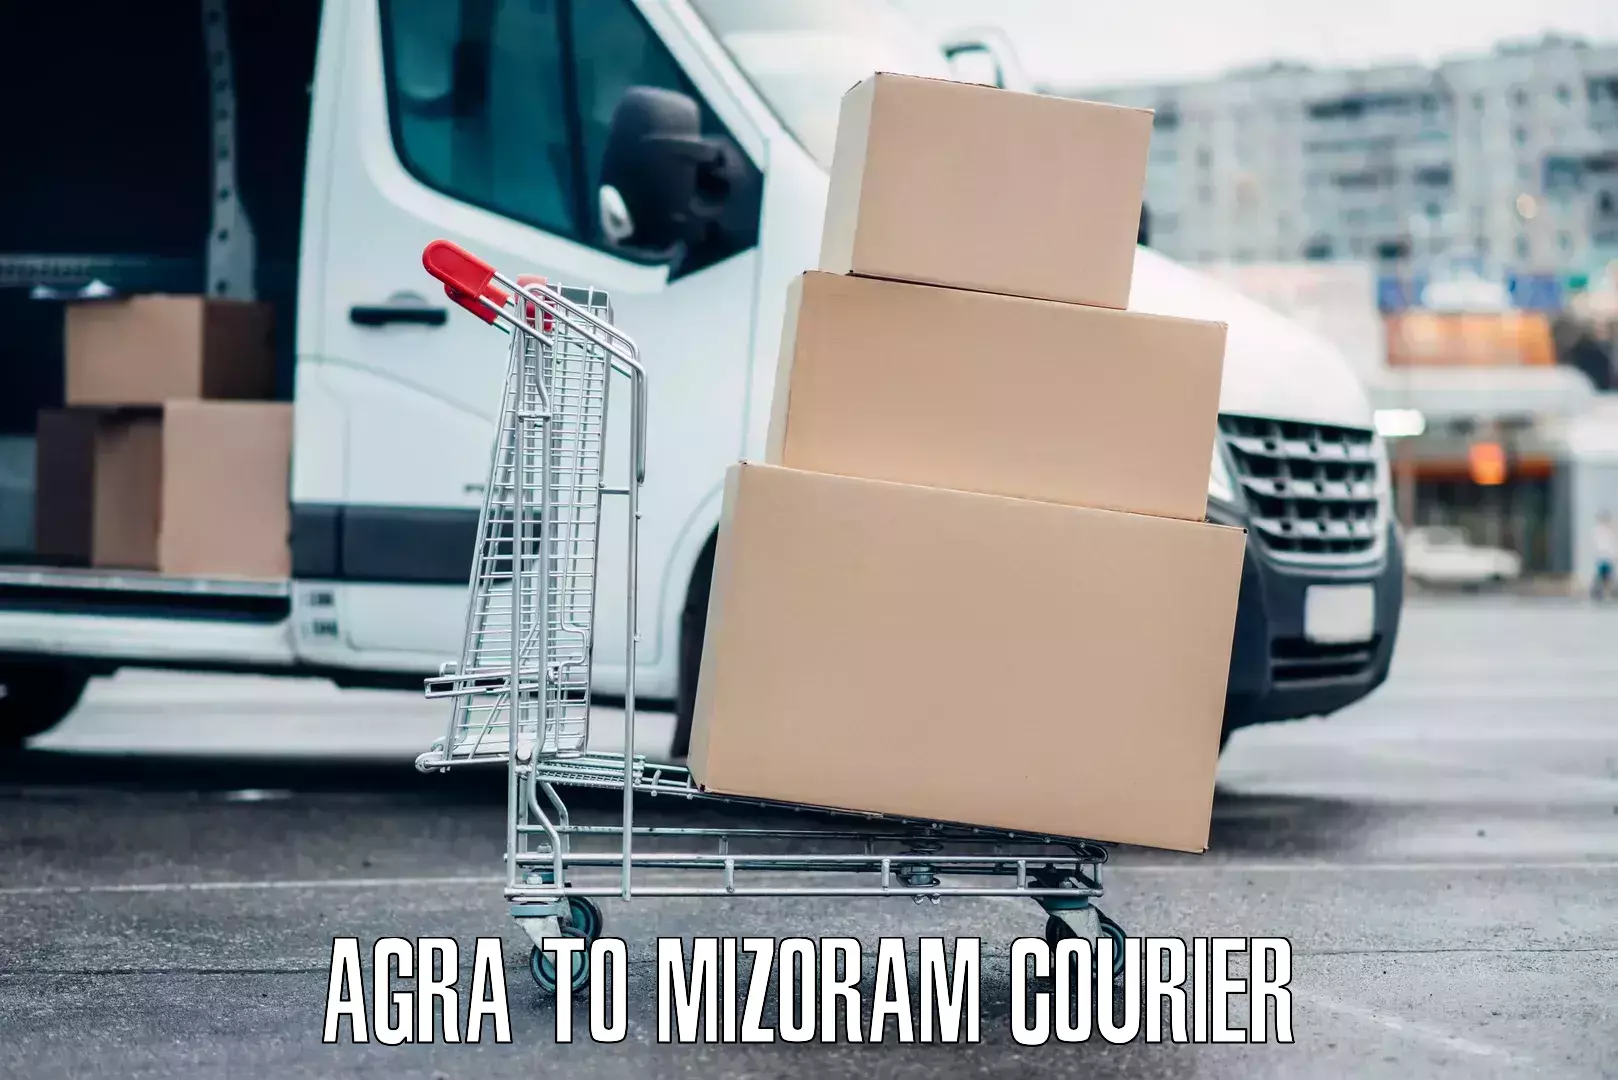 Baggage transport innovation Agra to Mizoram